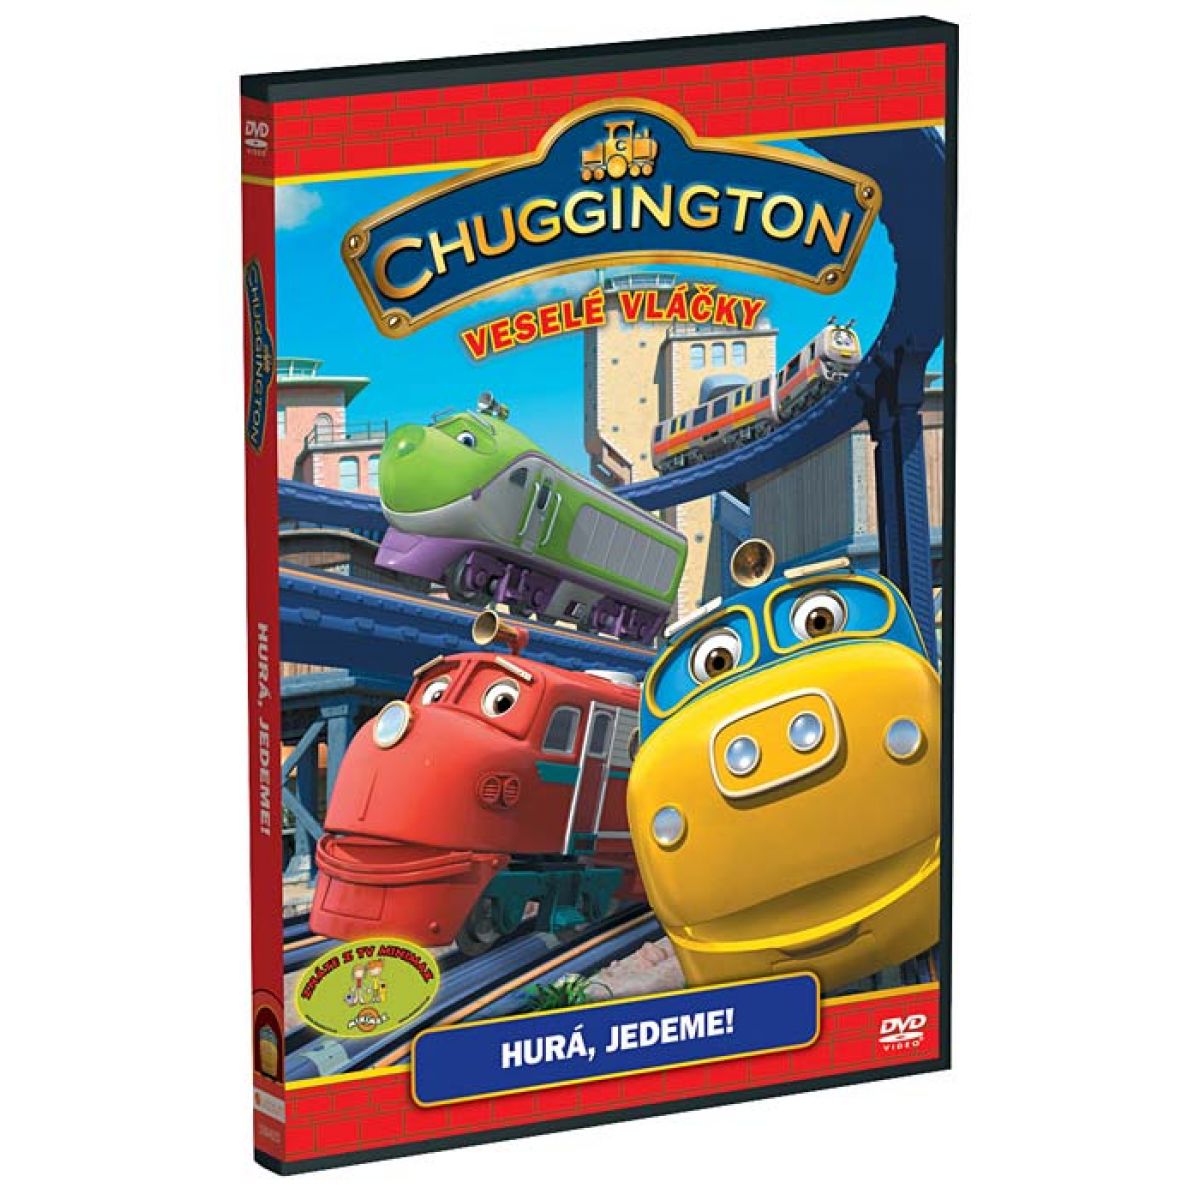 DVD Chuggington - Veselé vláčky - Hurá, jedeme!